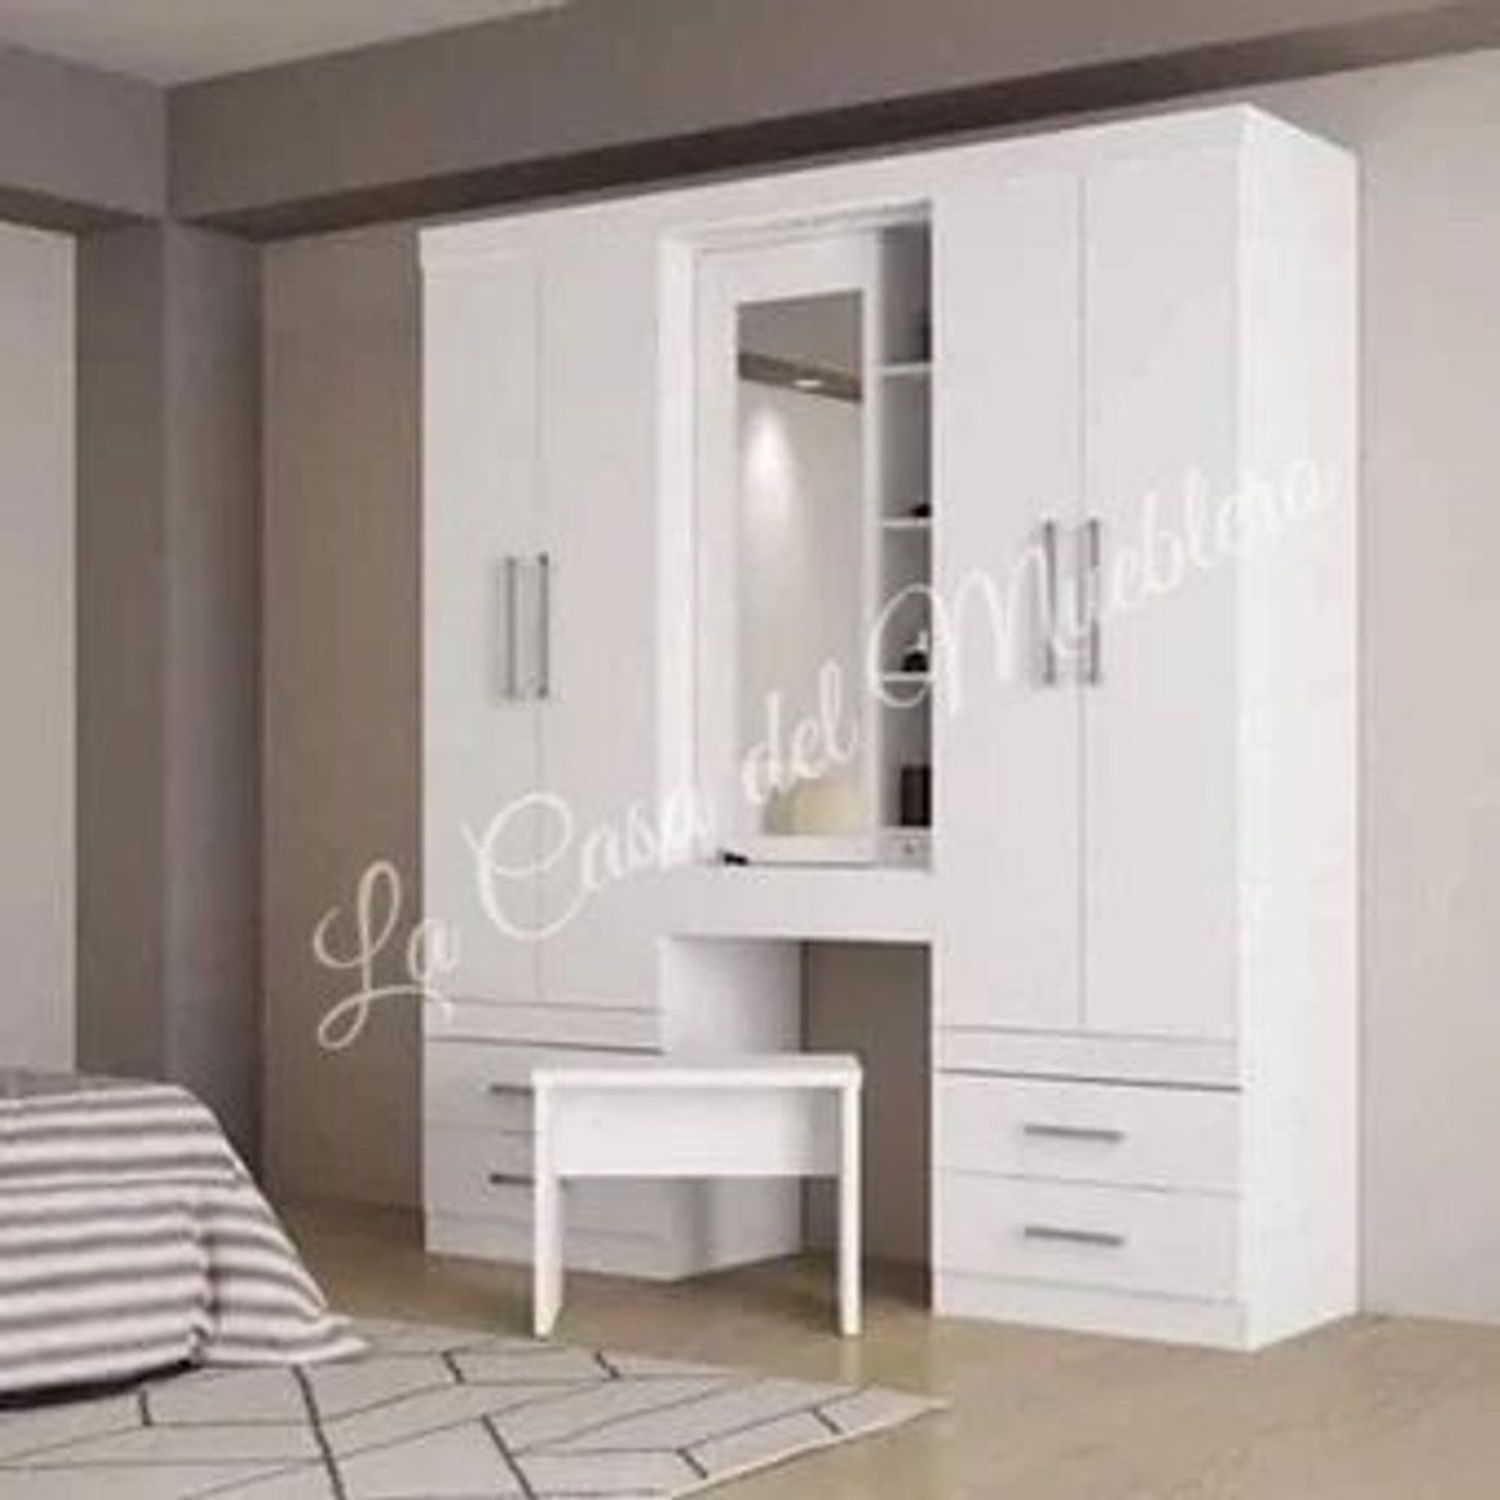 Dormitorio de diseño moderno, armario de madera blanca con espejo